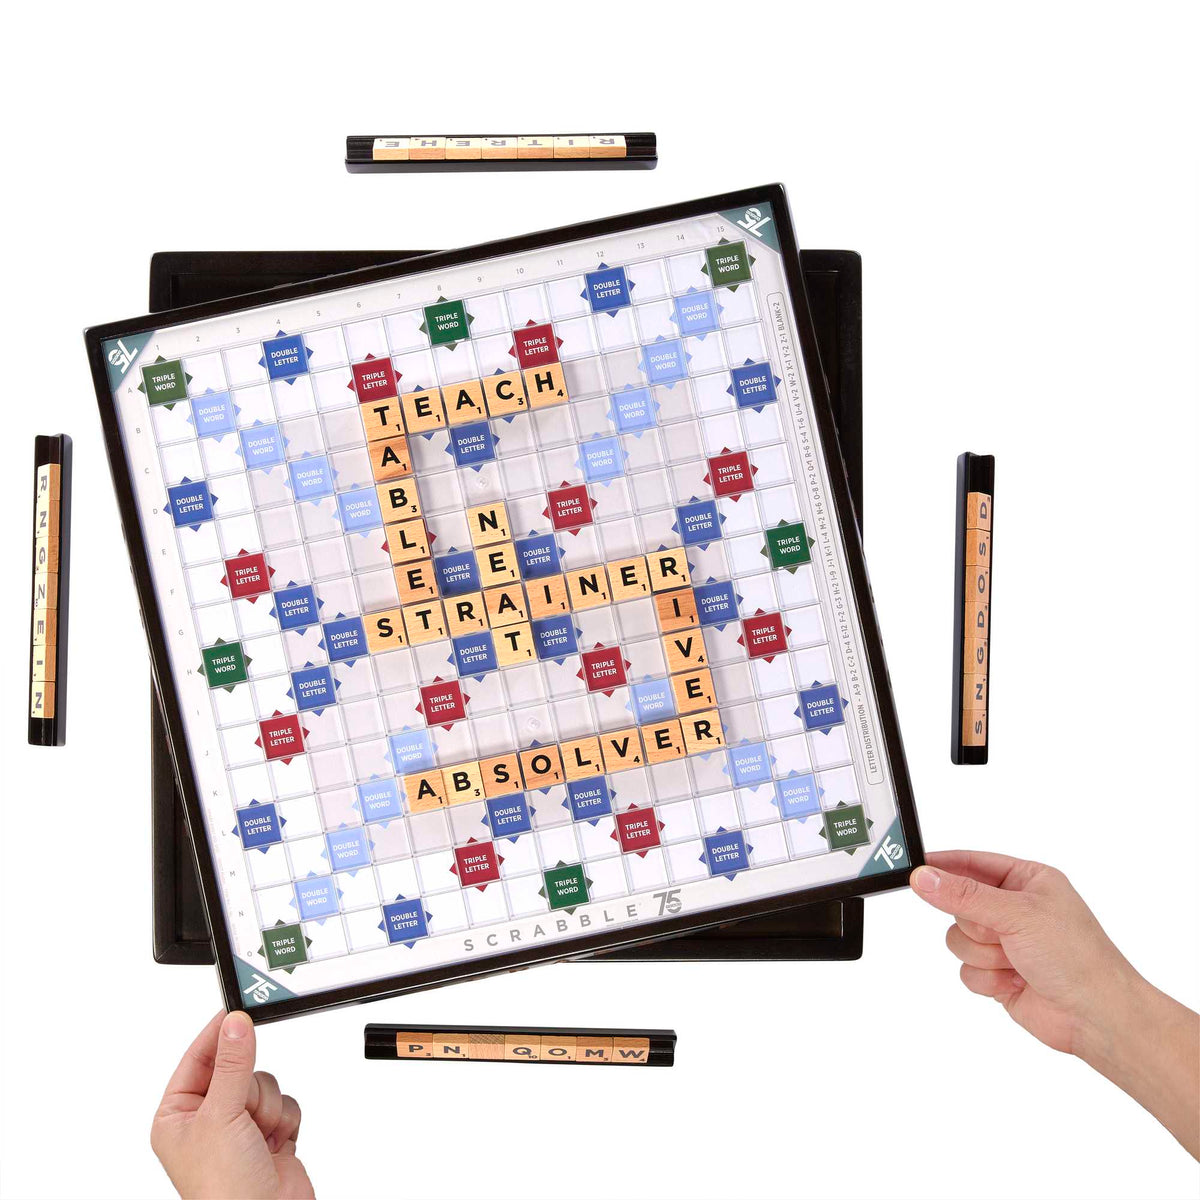 Scrabble - 75th Anniversary Edition